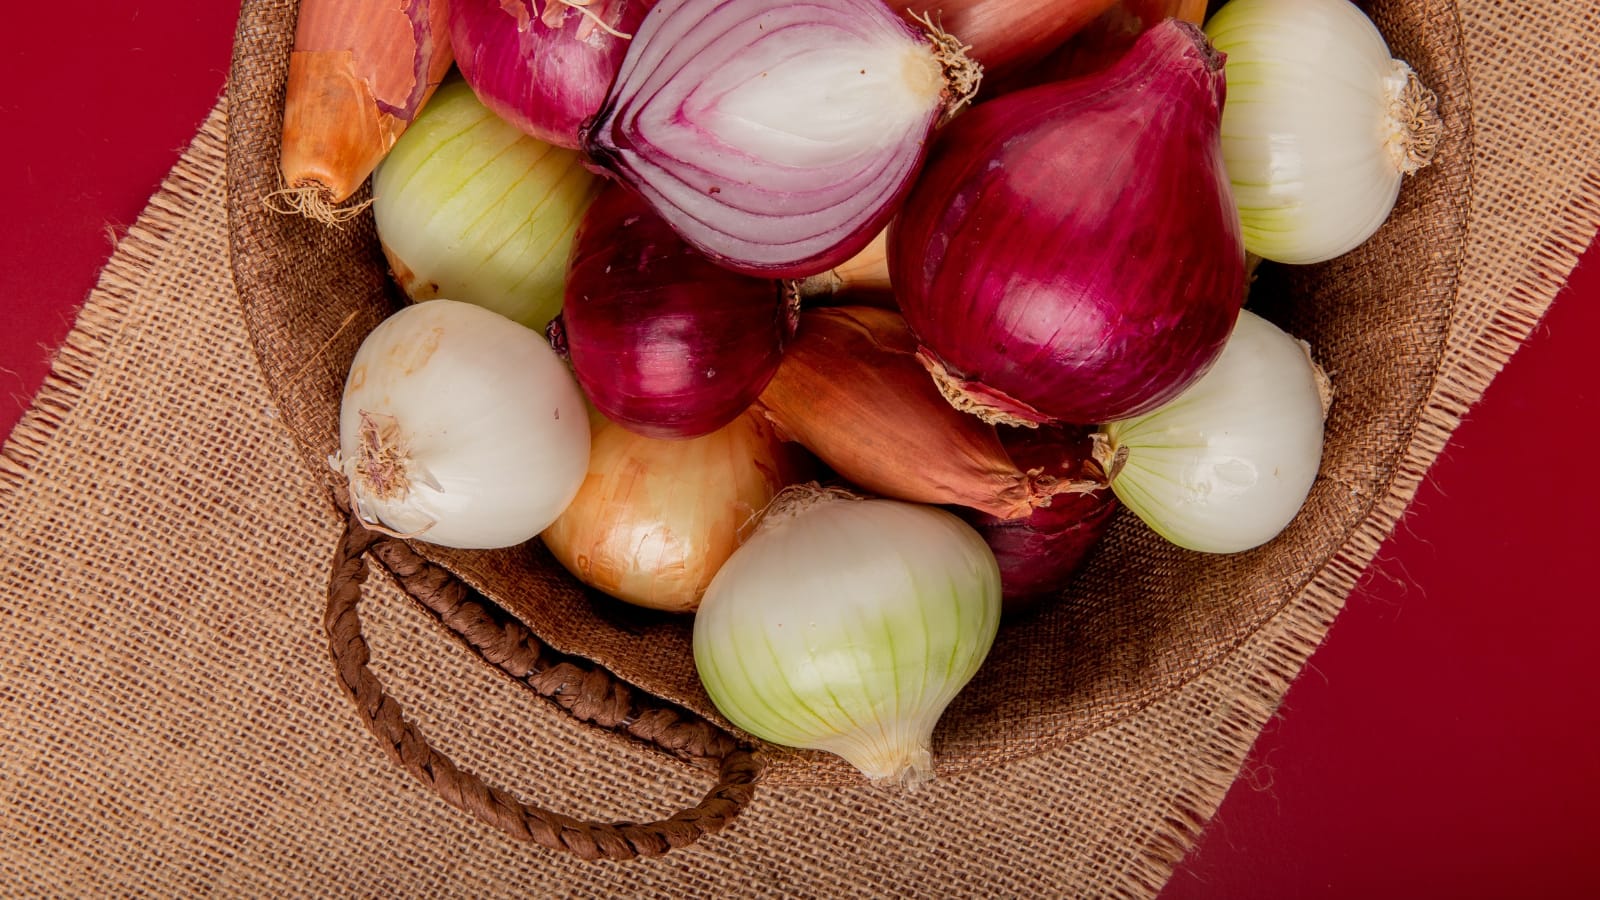 Sering dijadikan Bumbu Masakan, Ini 5 Manfaat Alami Bawang Putih dan Merah